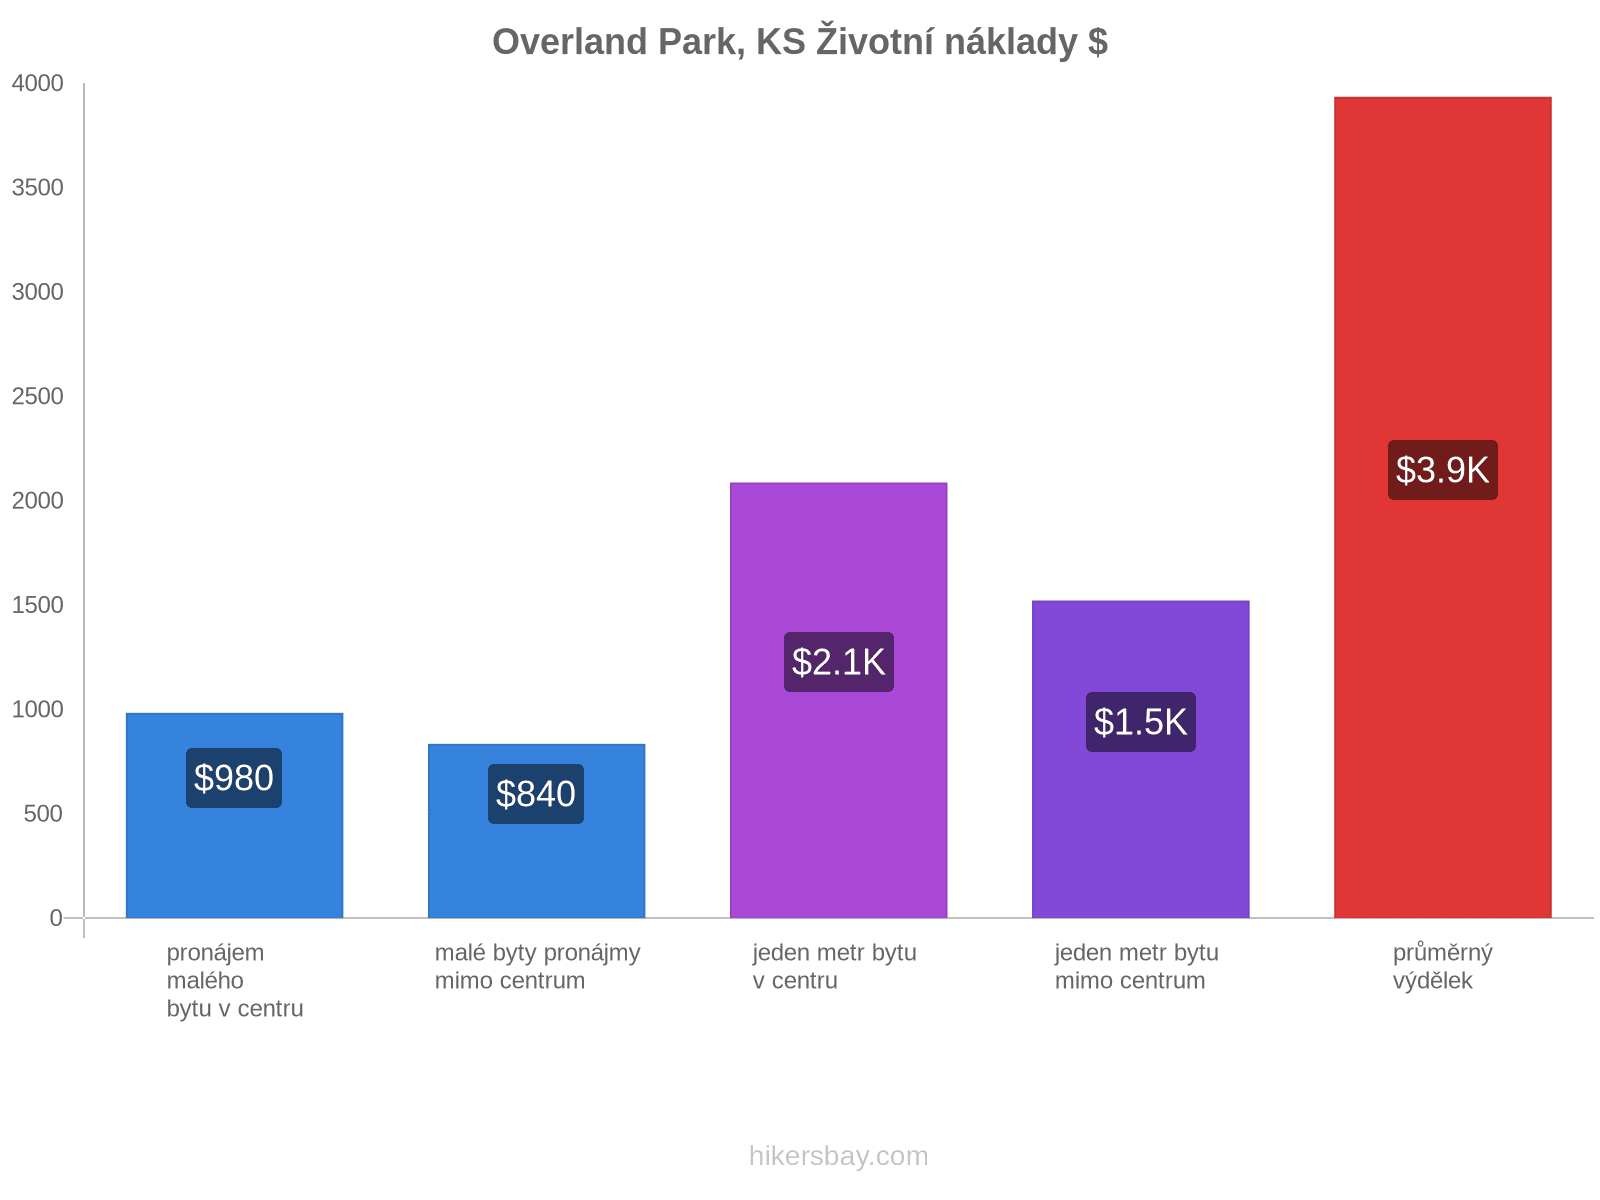 Overland Park, KS životní náklady hikersbay.com